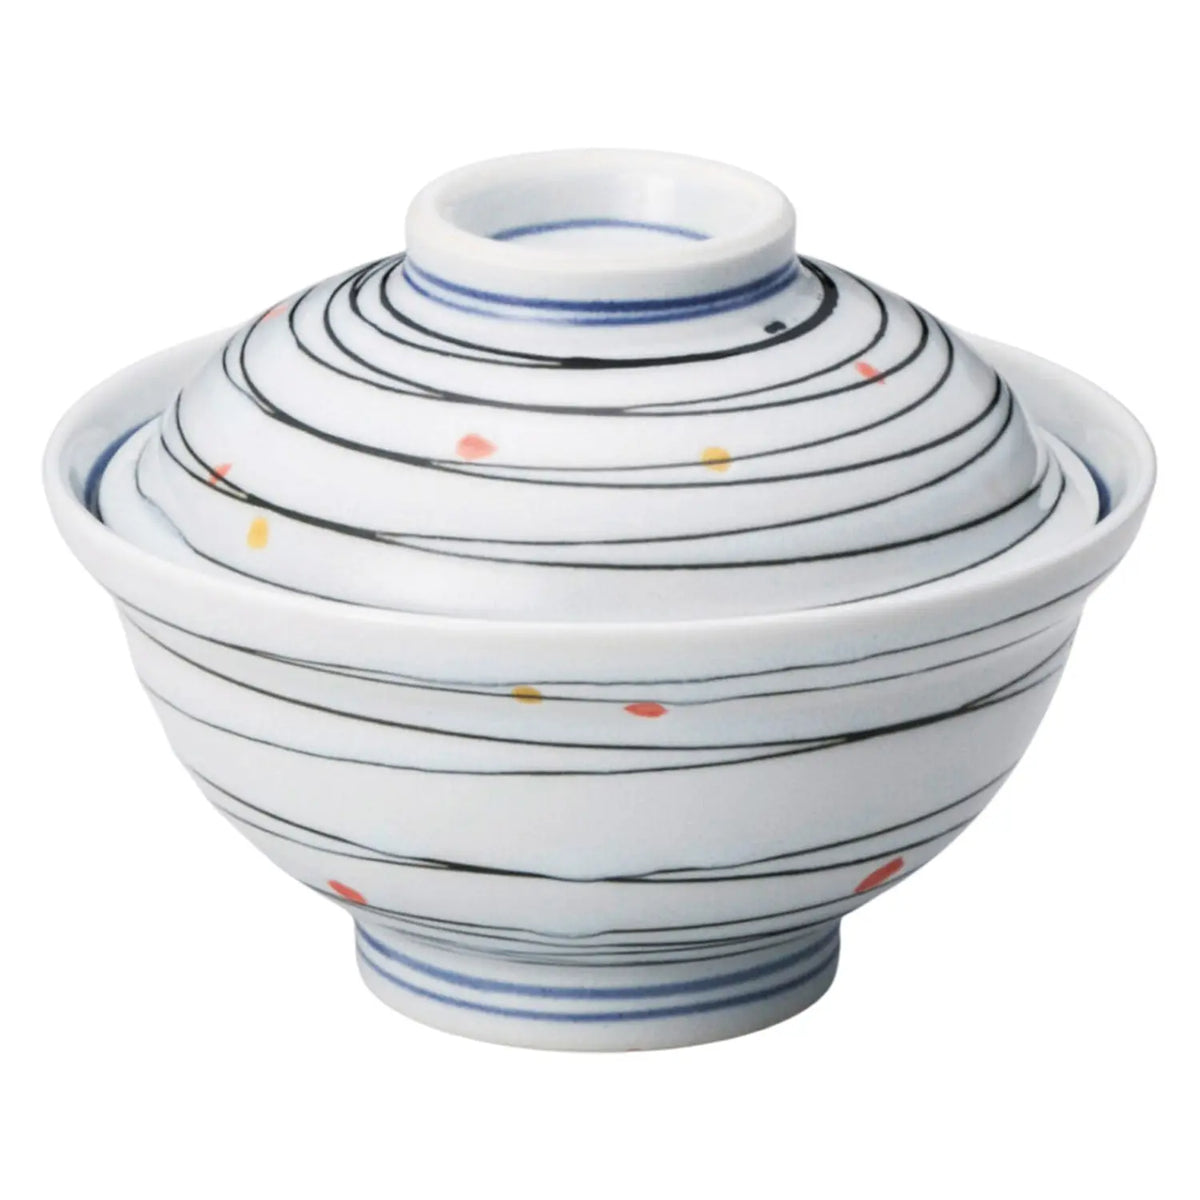 Tokiwa Mino Ware Porcelain Donburi Bowl Suisho-Isaribi 15.5cm